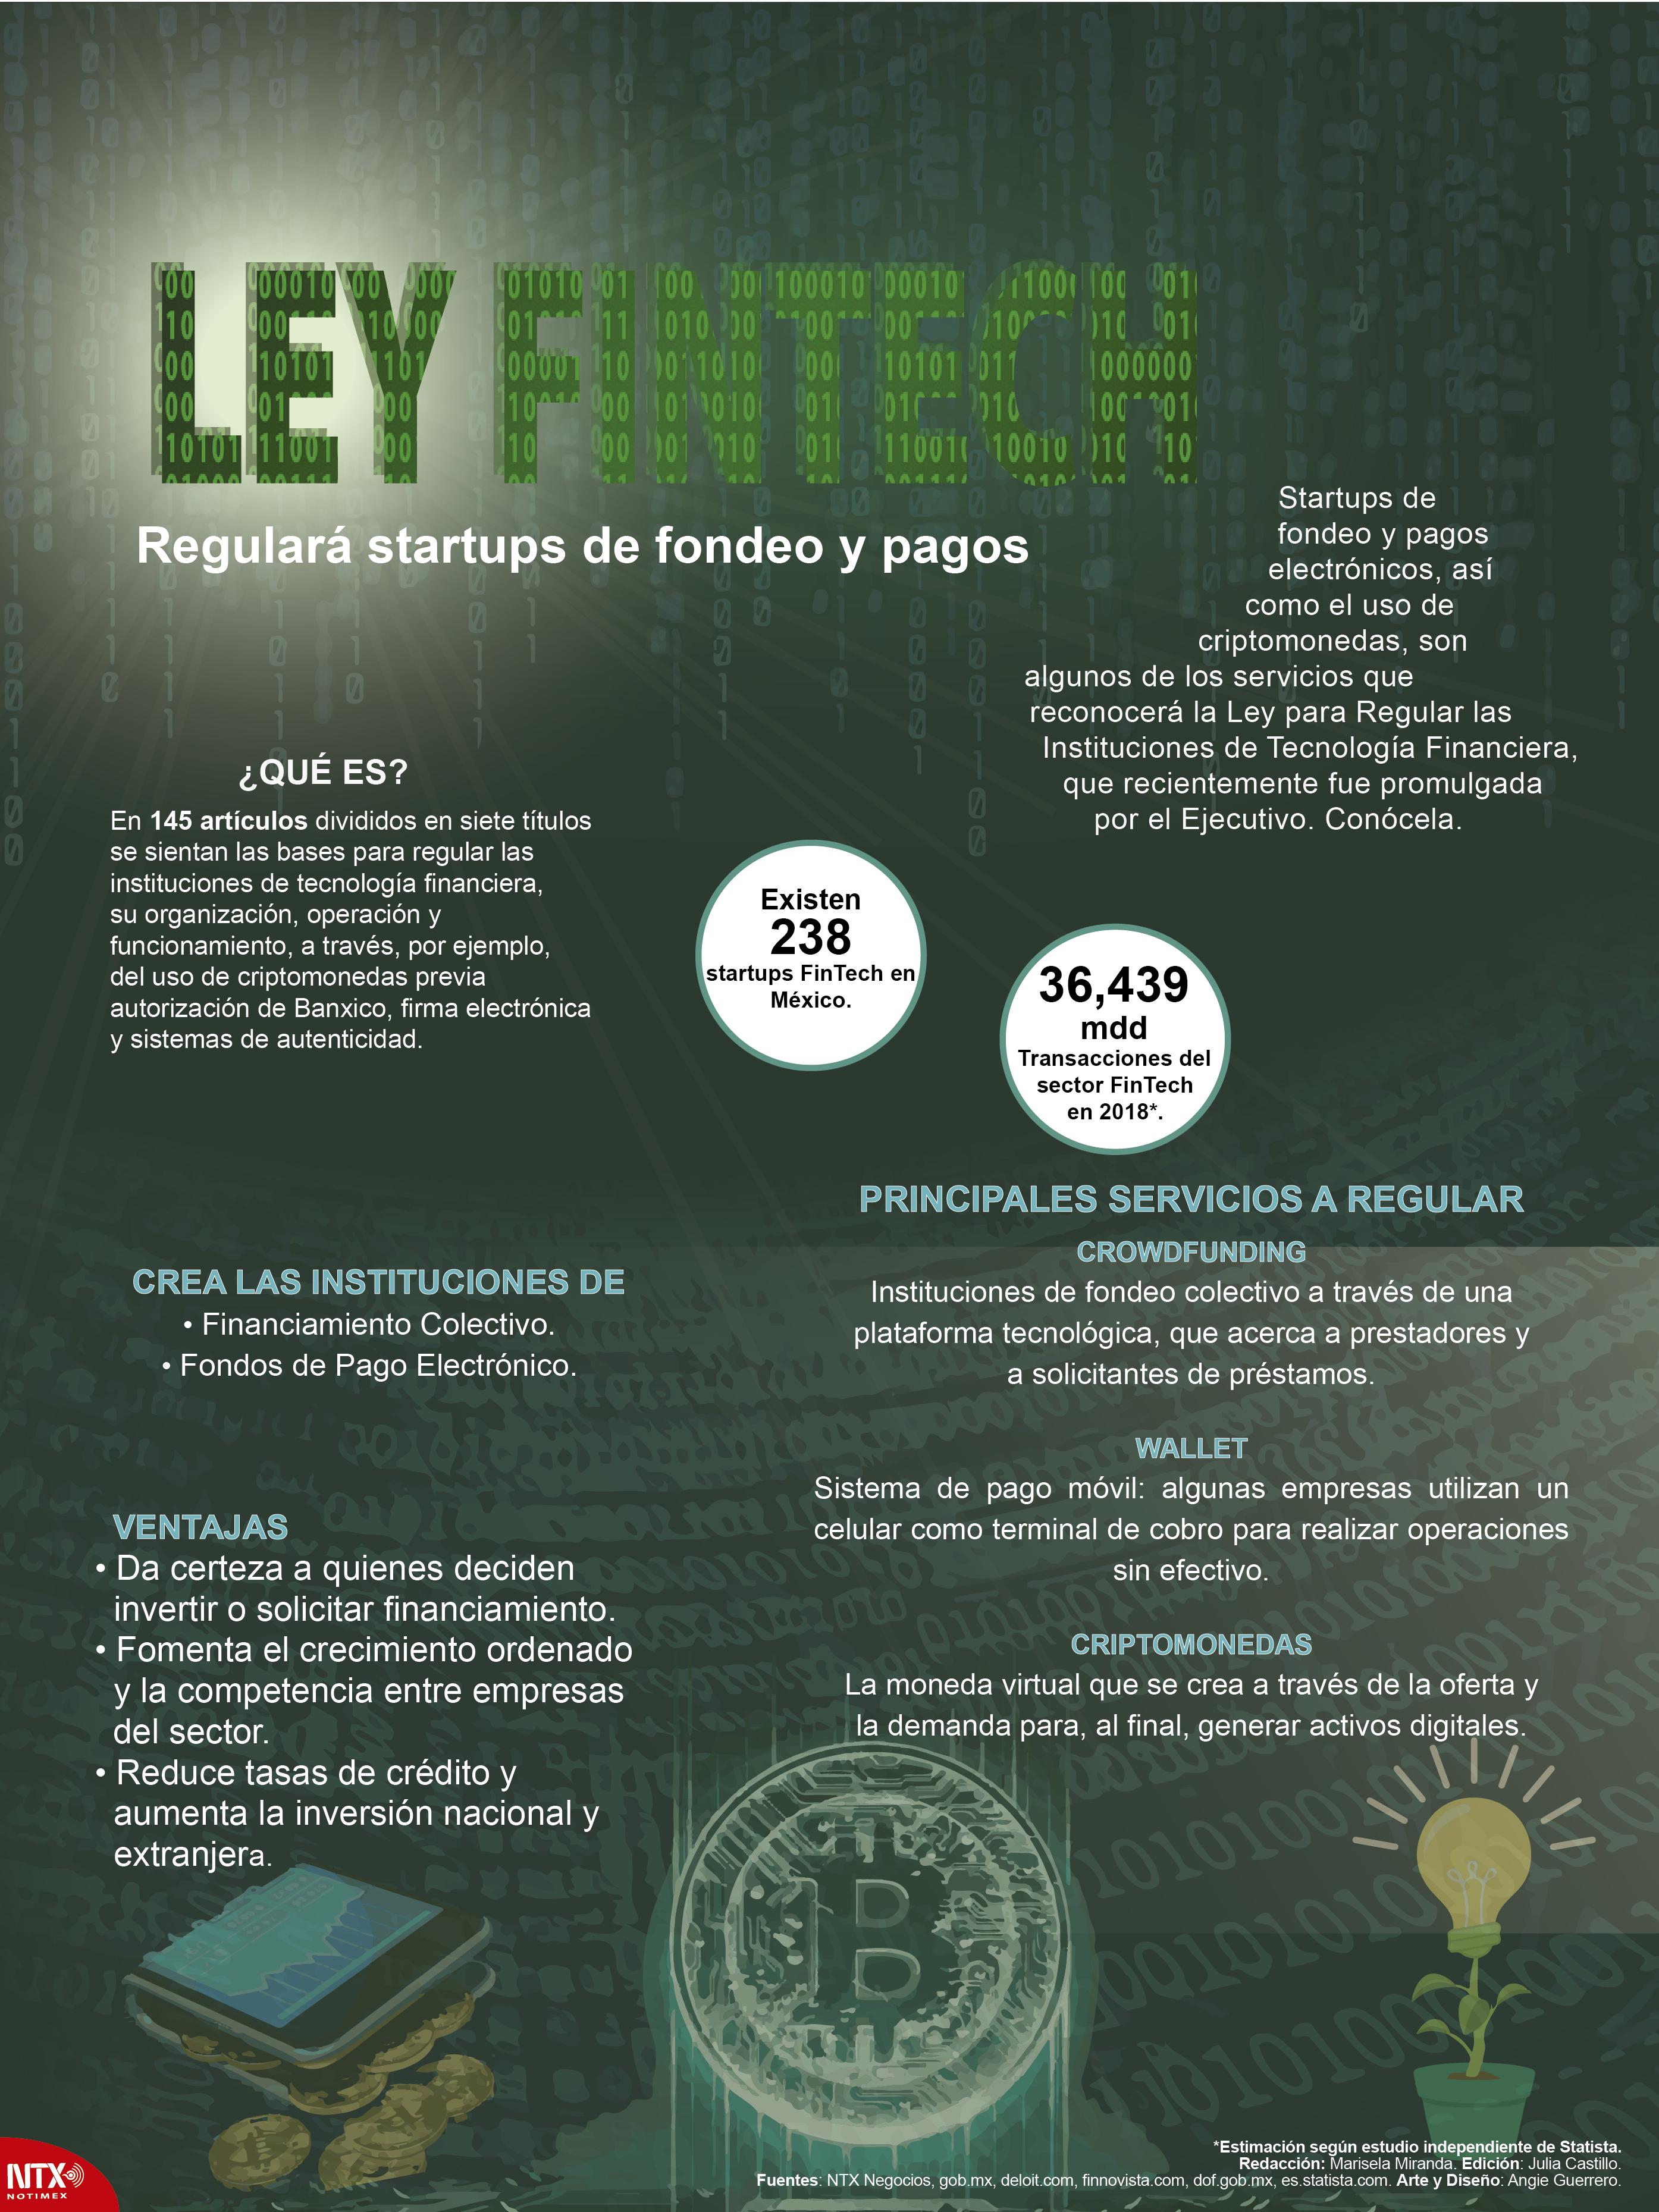 Ley Fintech: Regulará startups de fondeo y pagos